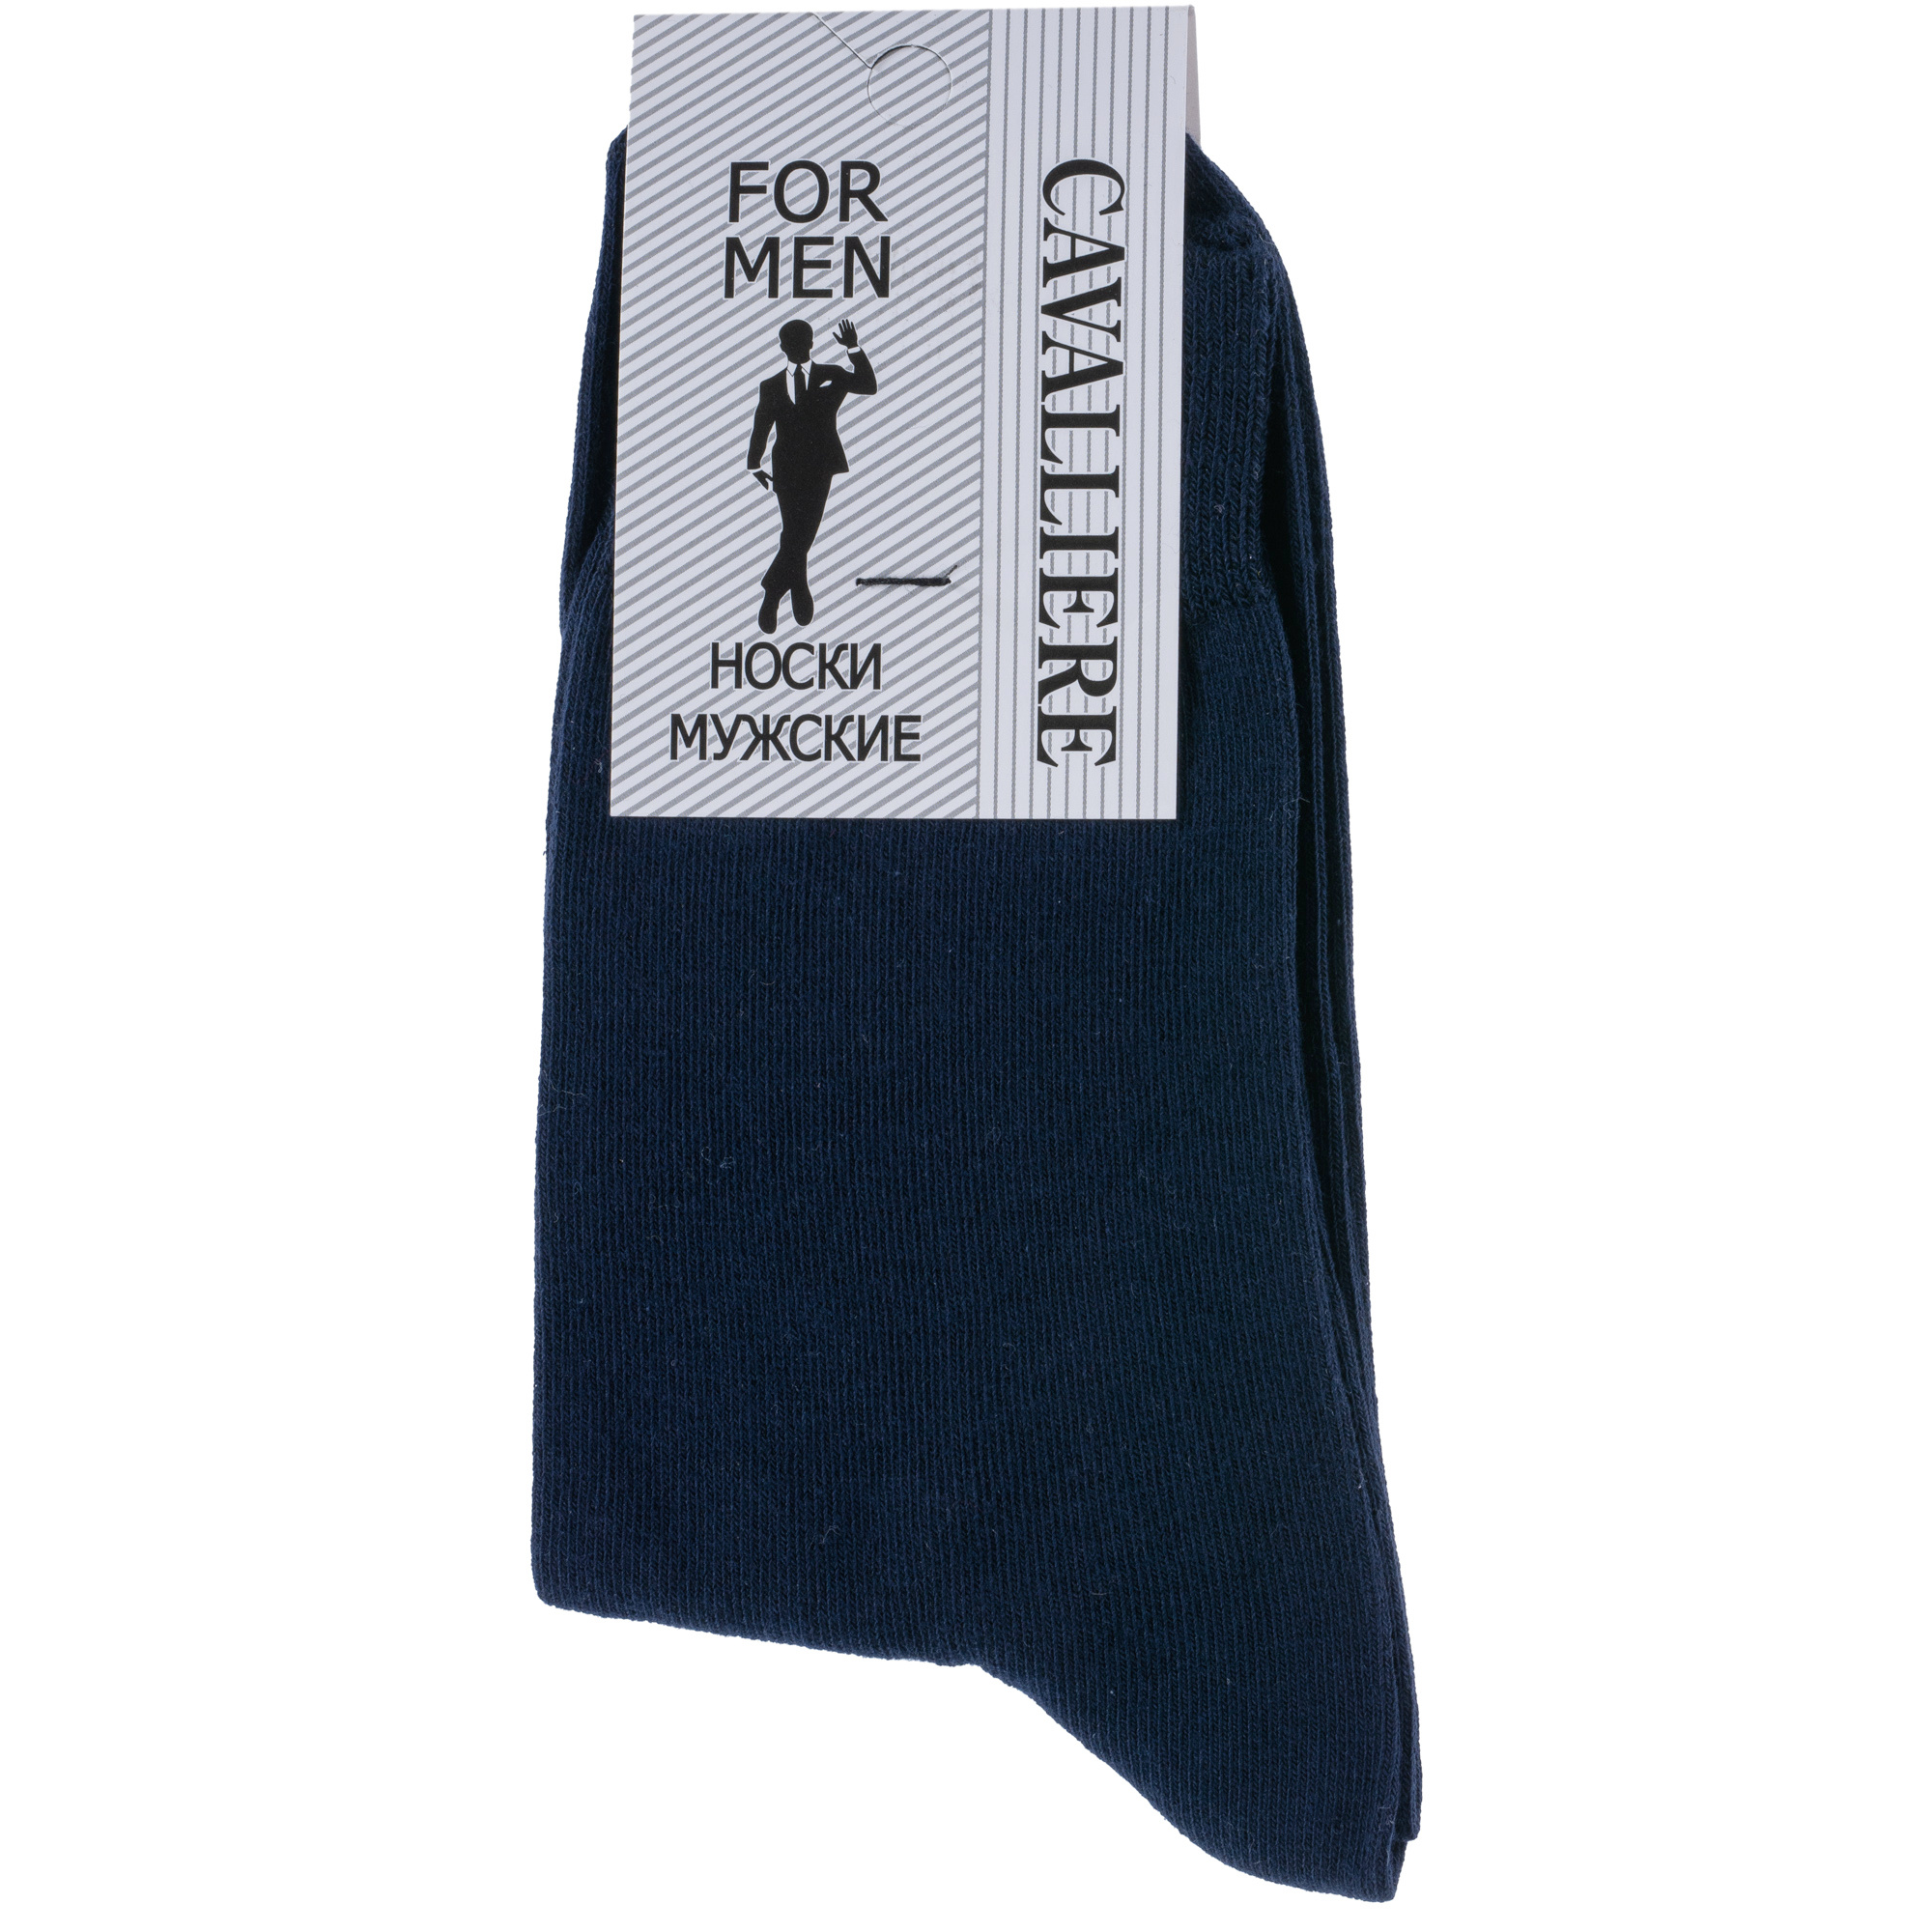 Мужские носки CAVALLIERE (RuSocks)